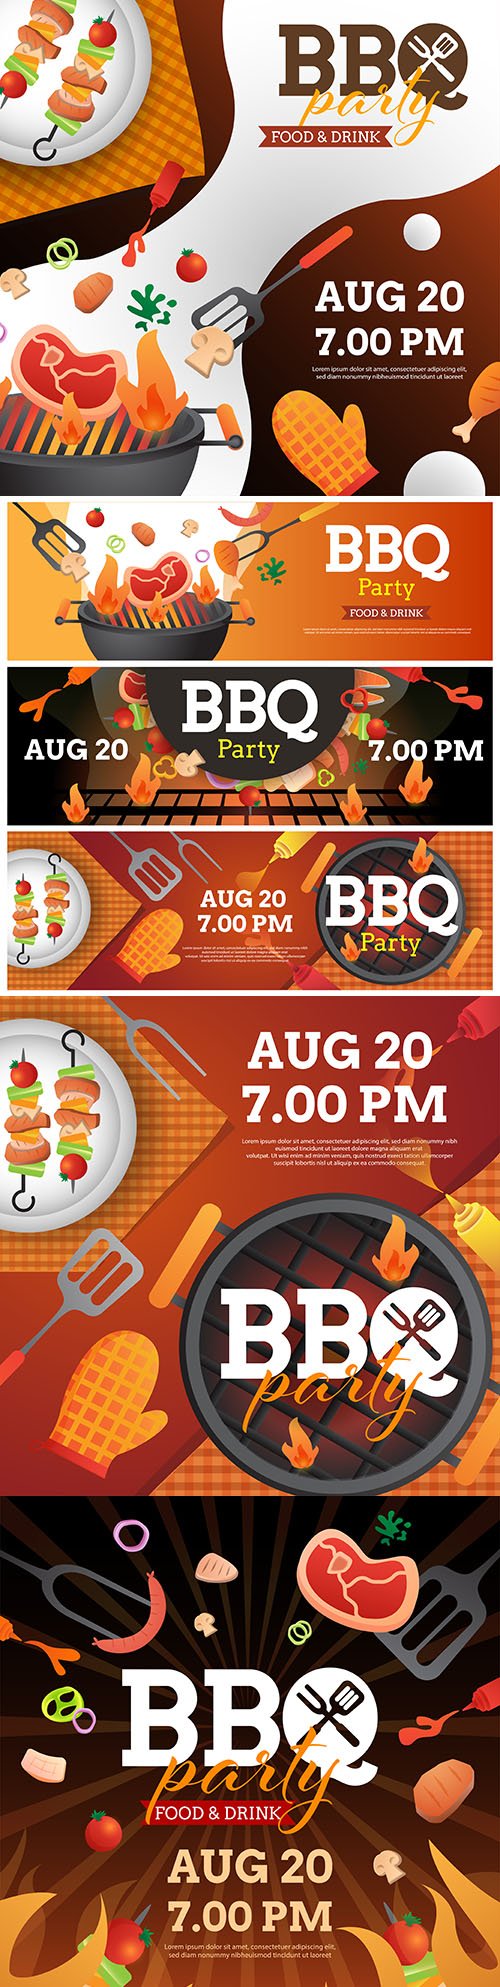 Barbecue invitation template with grill design